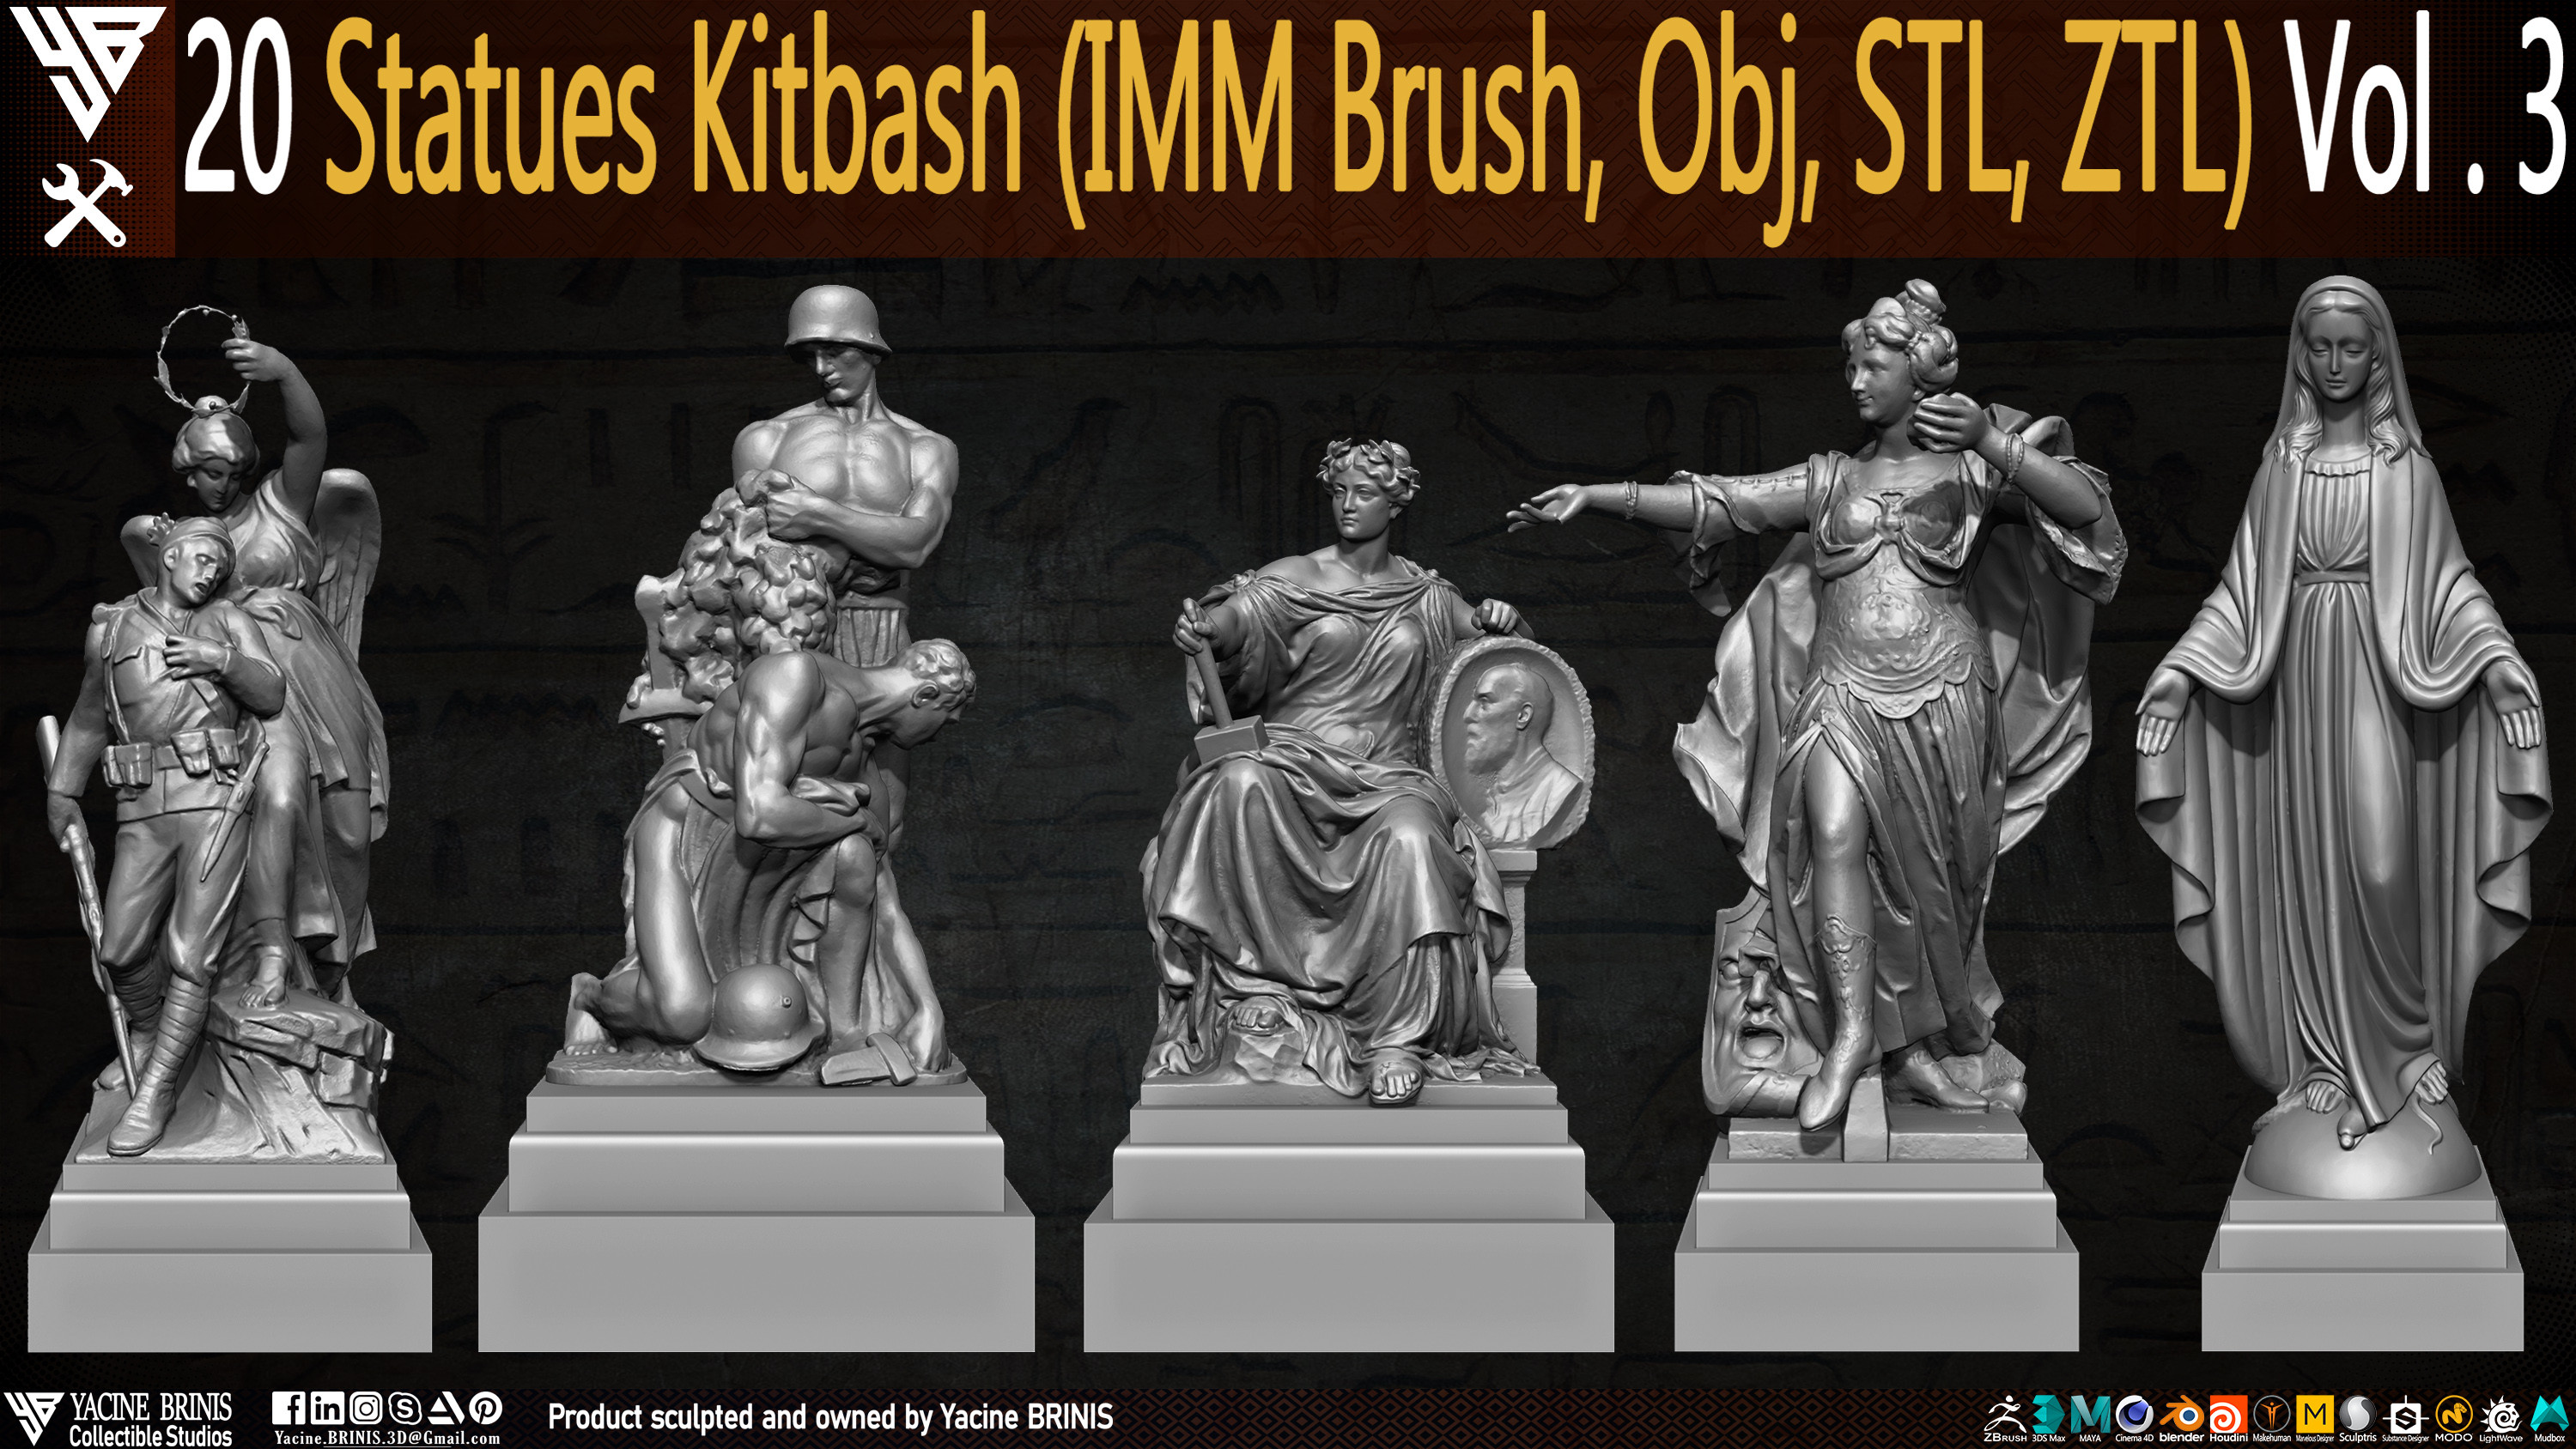 Statues Kitbash by yacine brinis Set 11